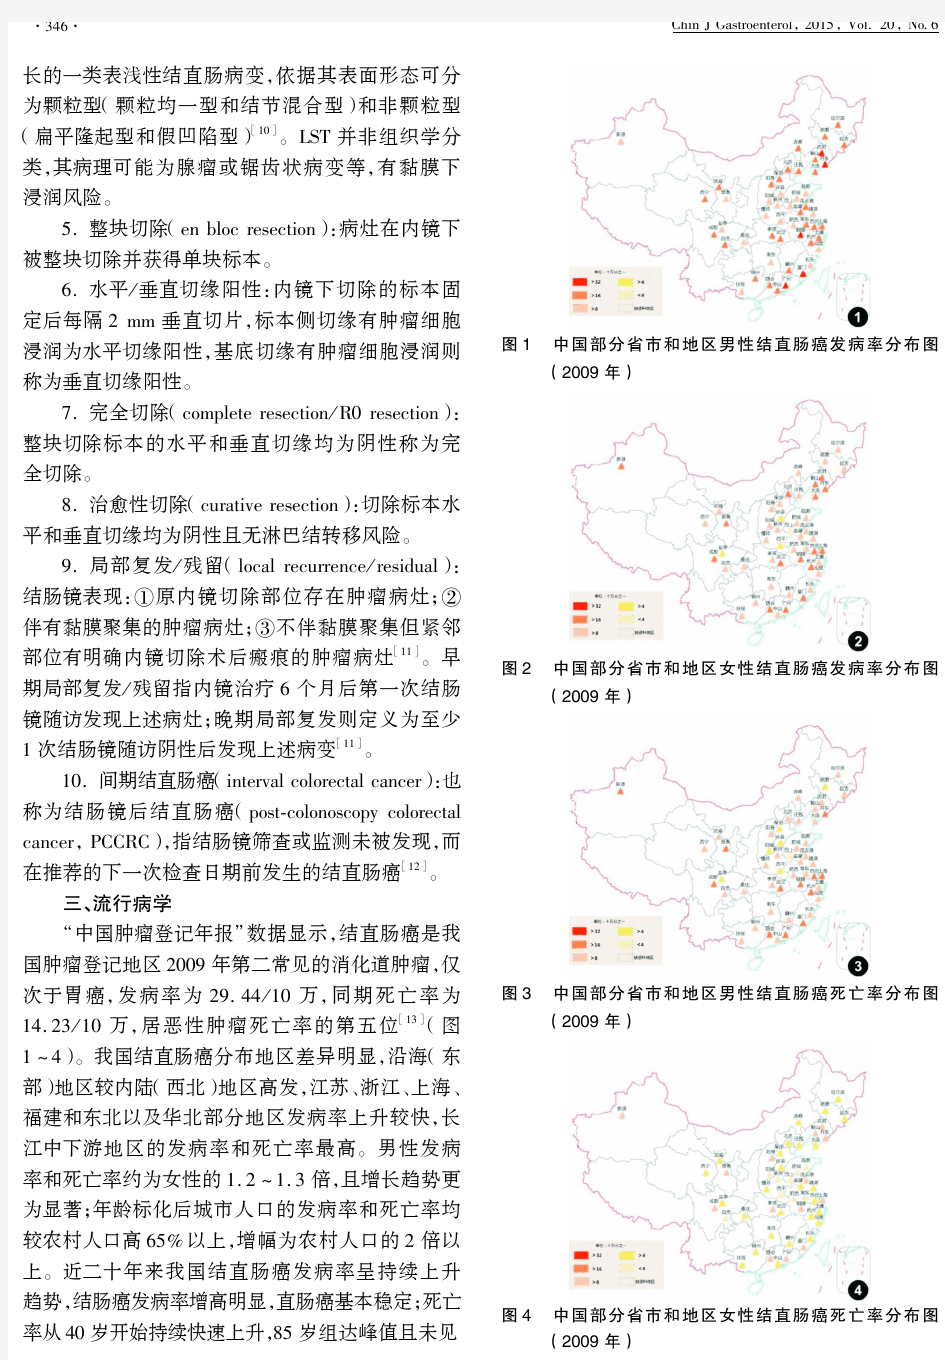 中国早期结直肠癌筛查及内镜诊治指南(2014年,北京)